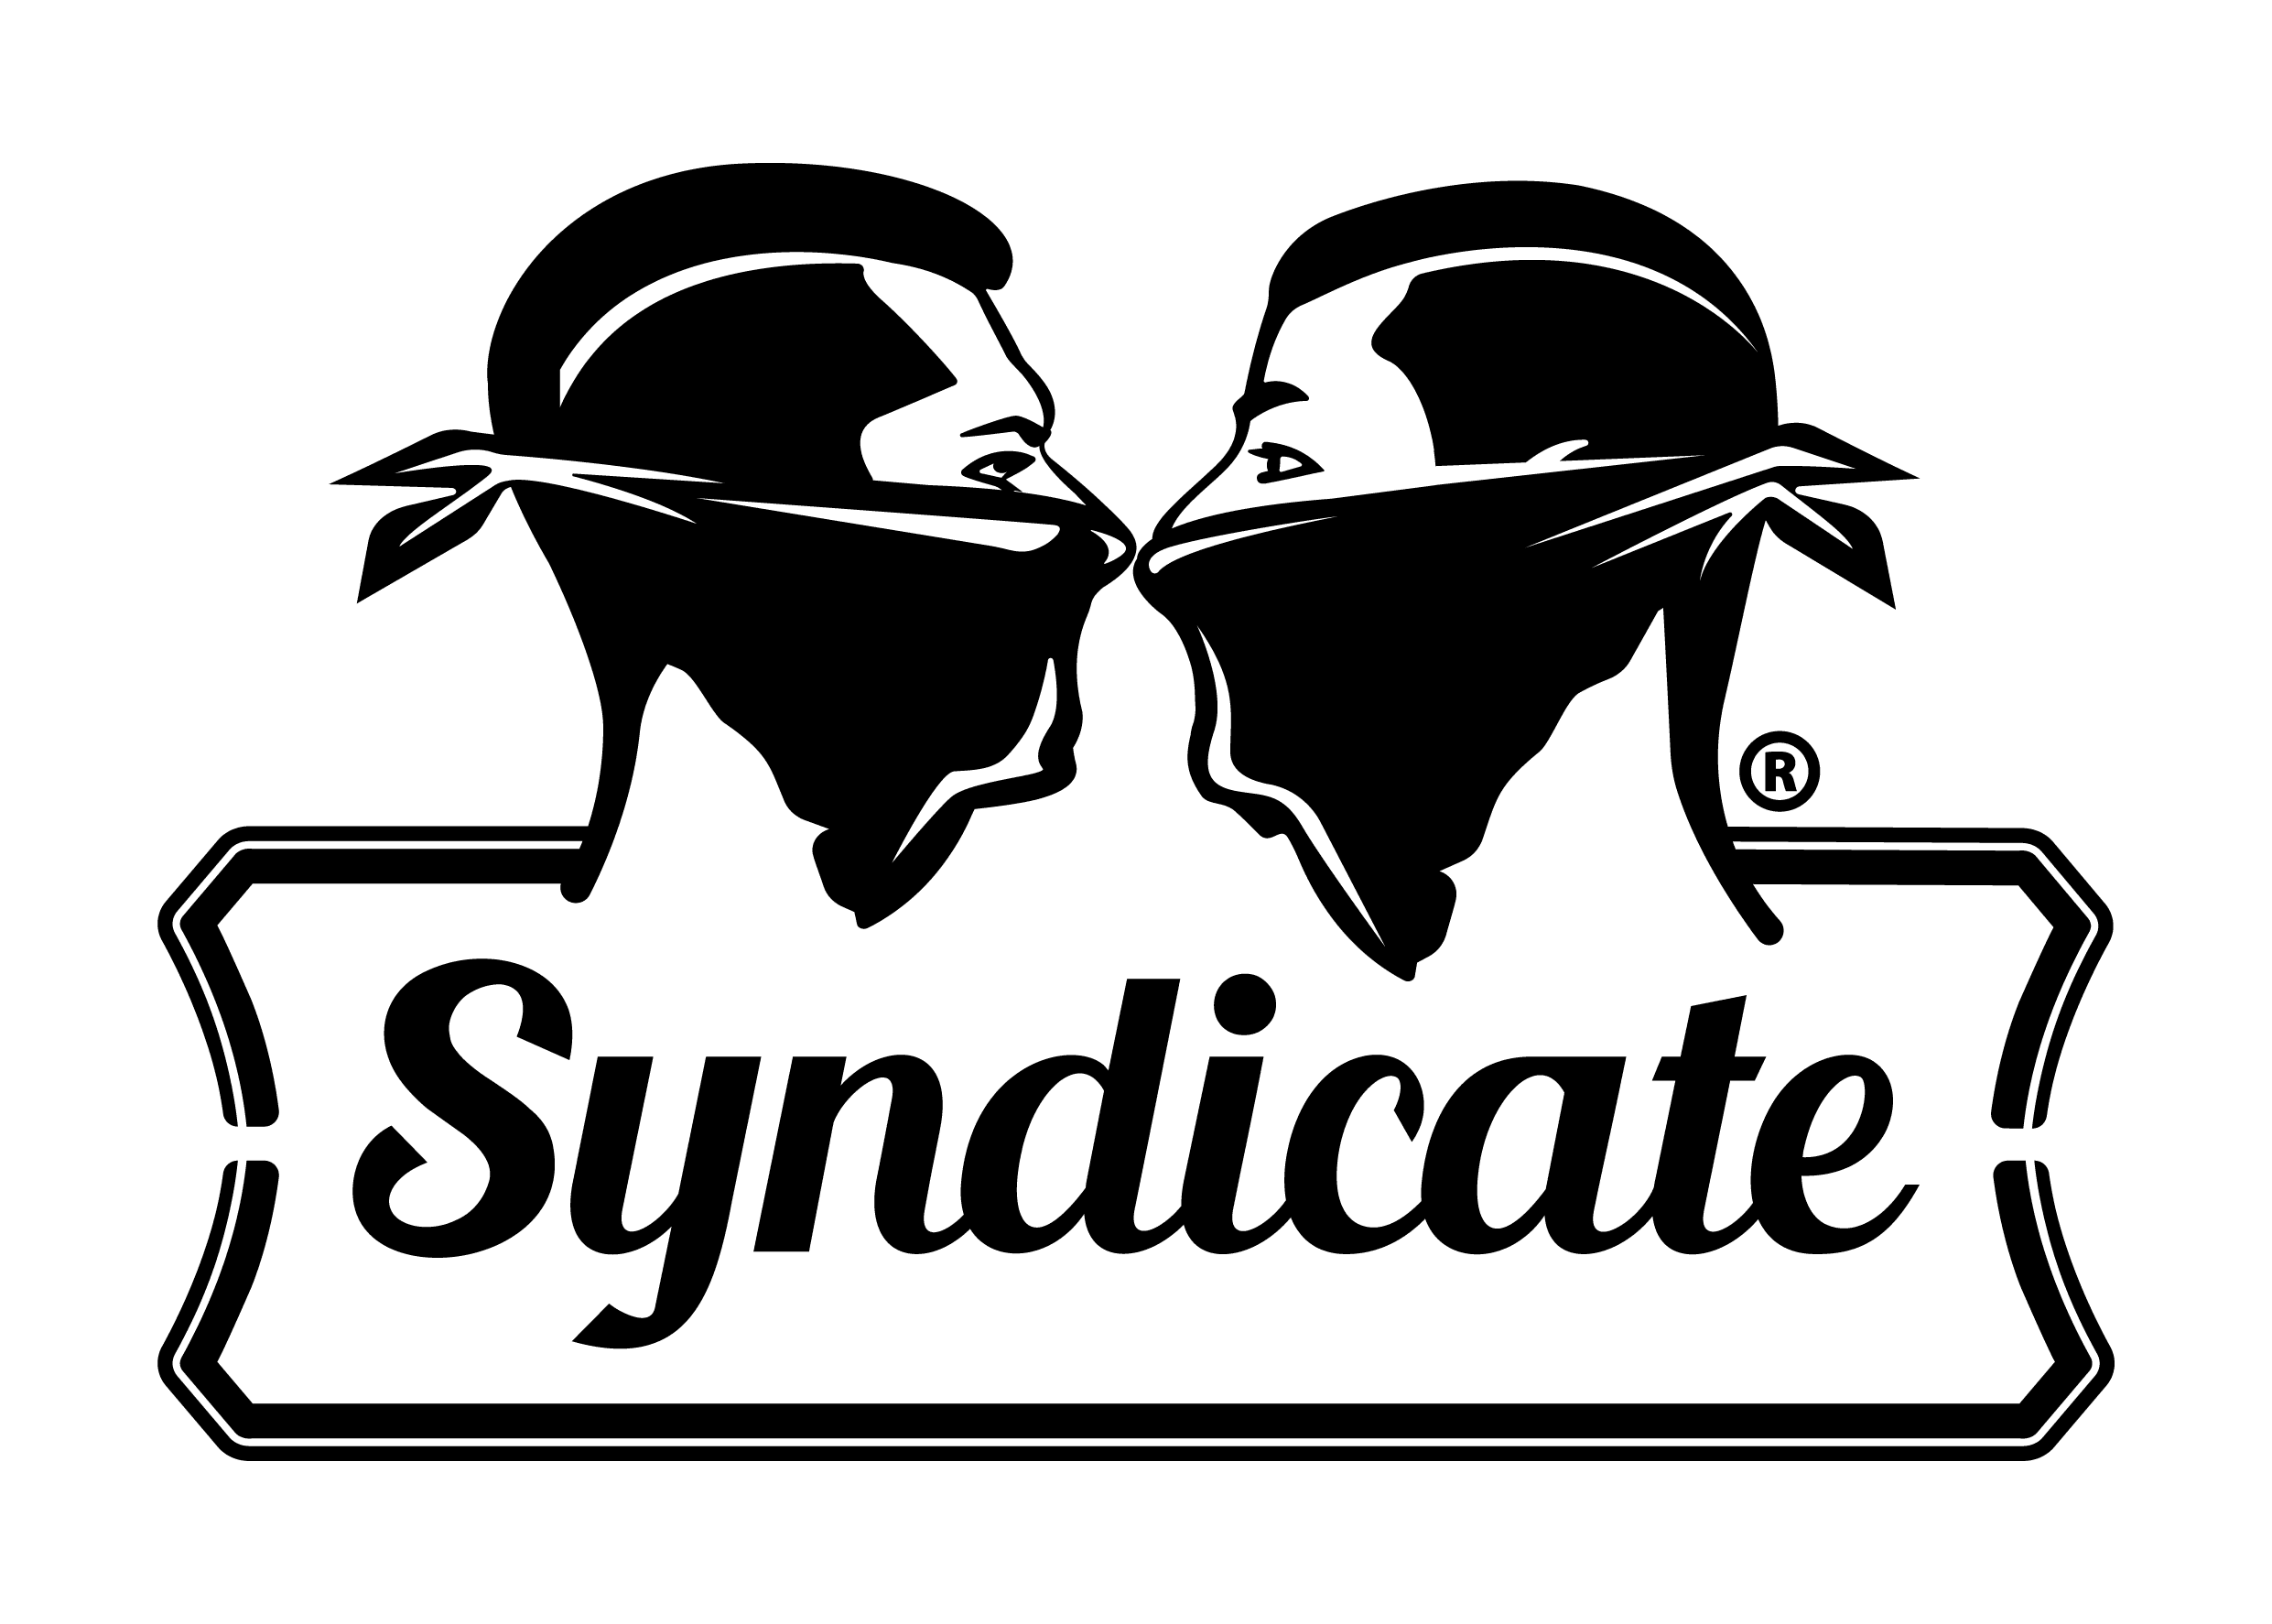 Syndicate Prague